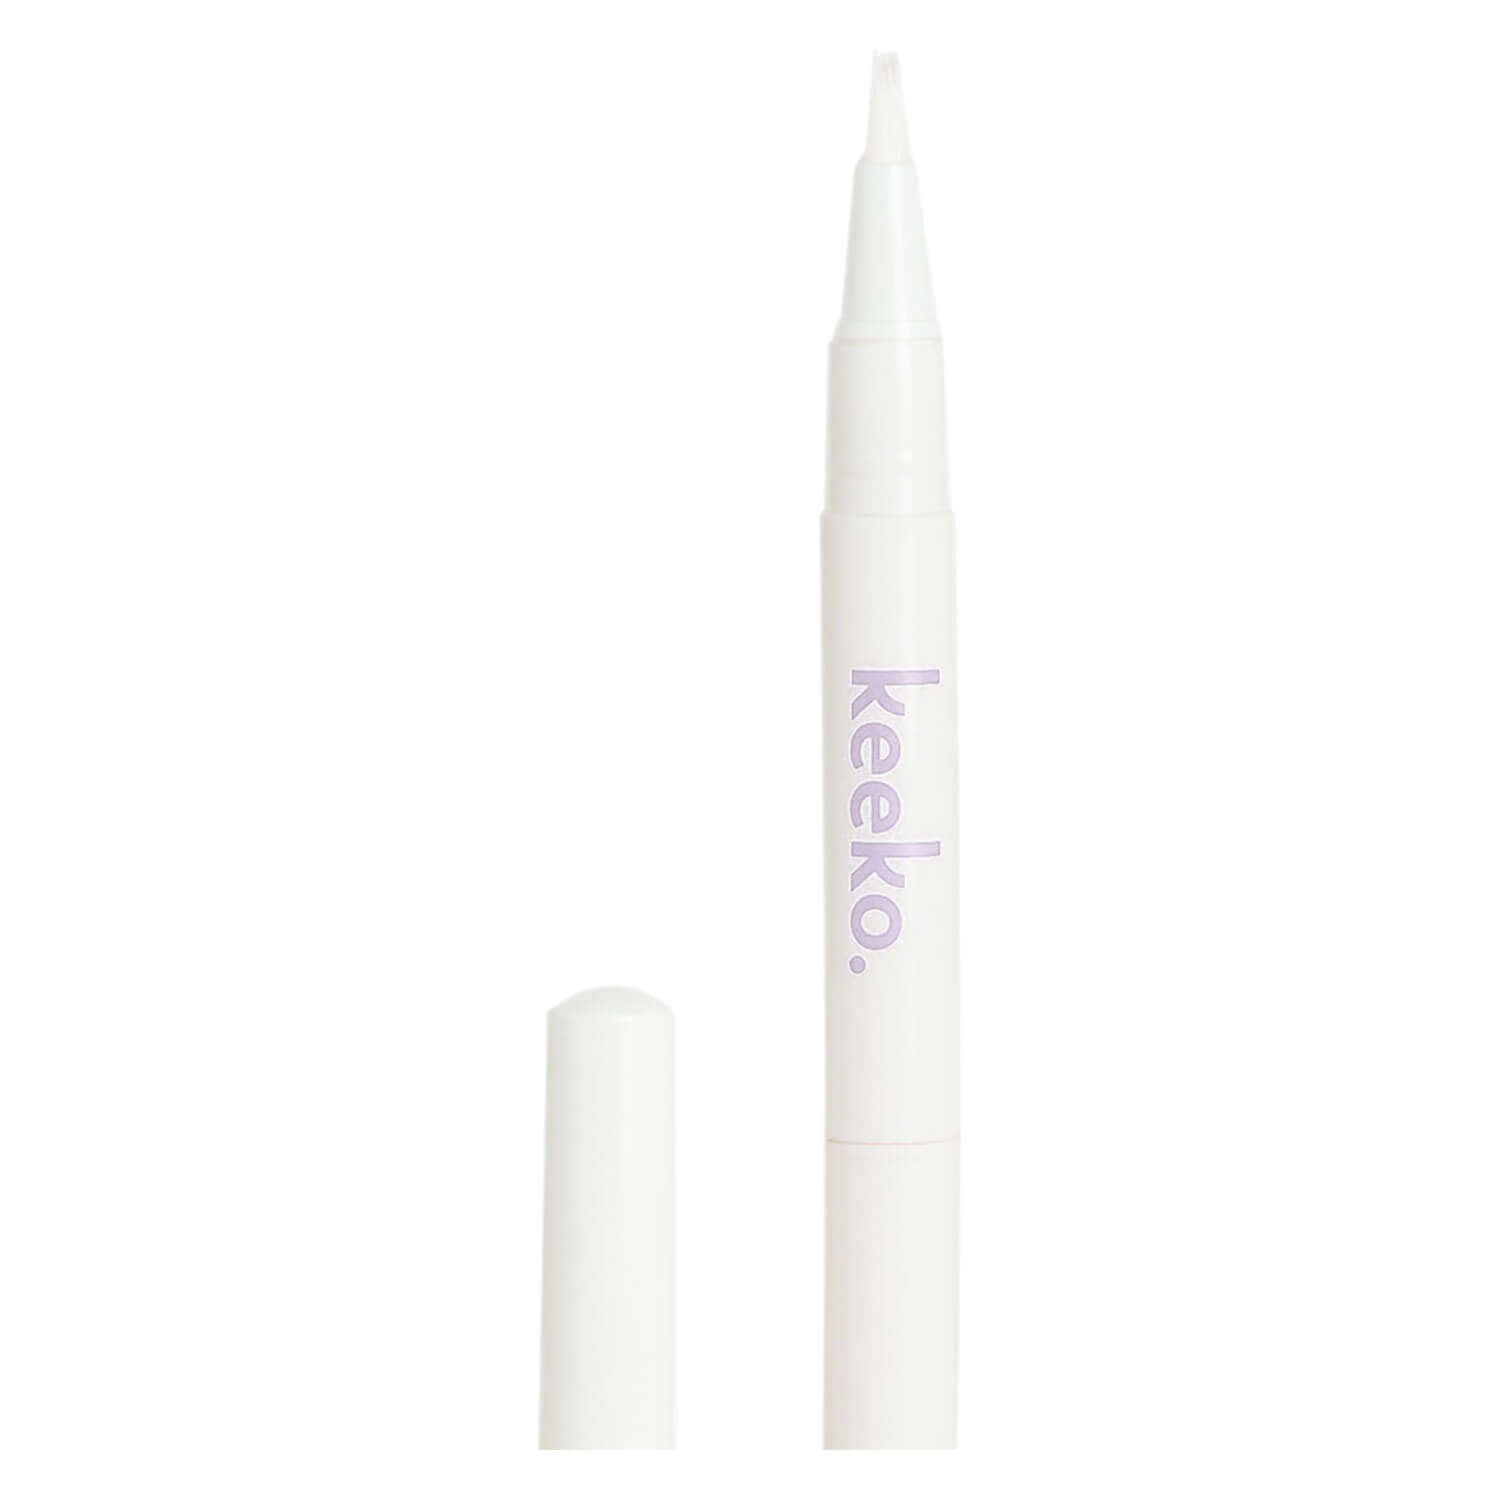 Produktbild von keeko - Pflanzlicher Zahnaufhellungsstift